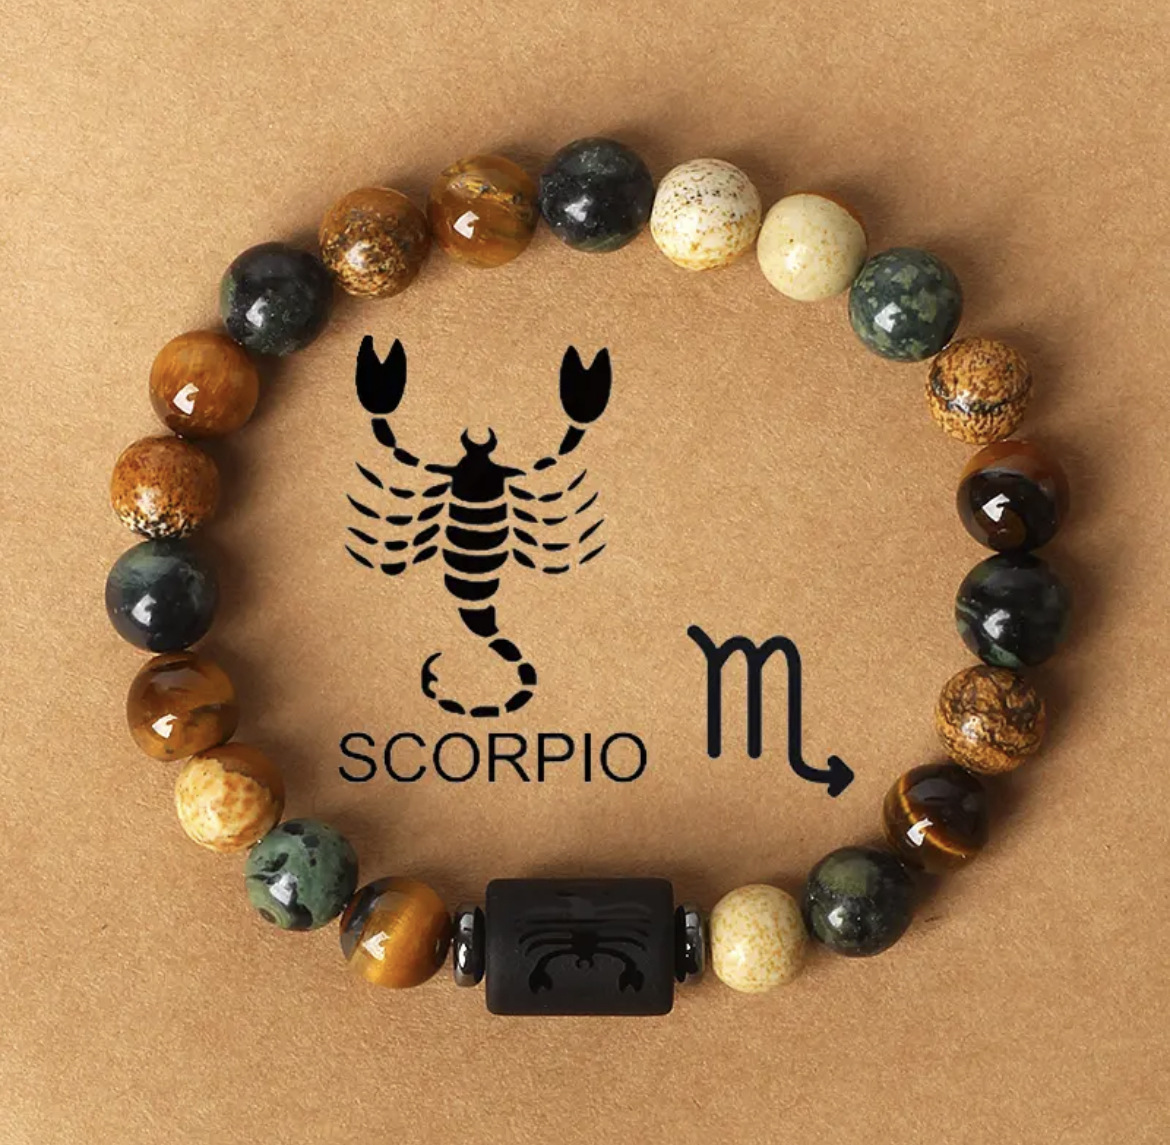 5 Scorpion